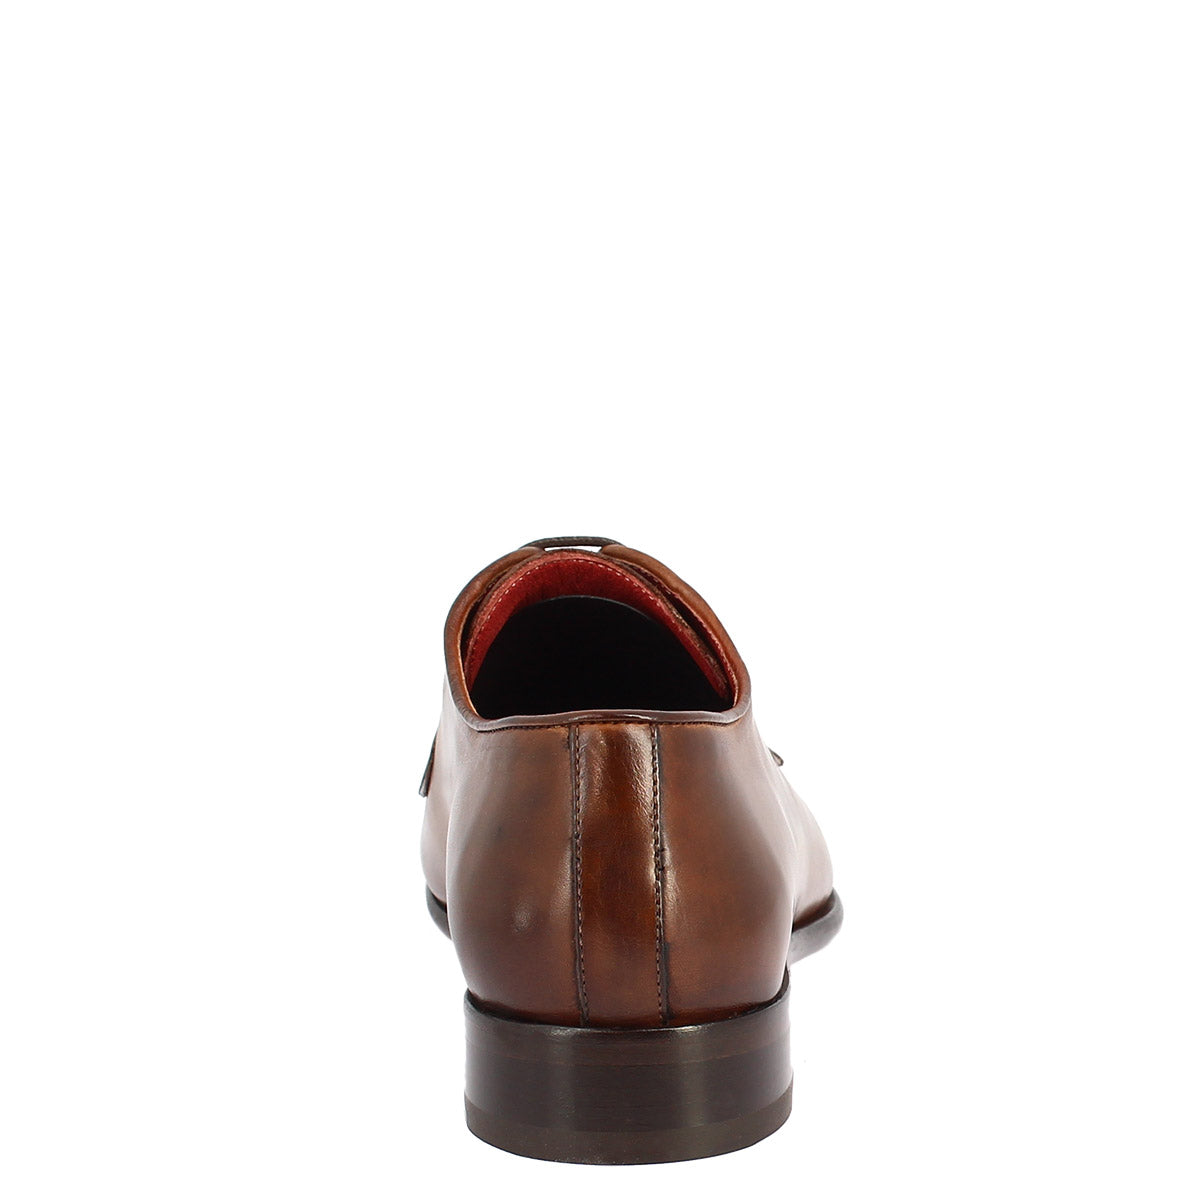 Chaussures à lacets faites à la main pour hommes en cuir cognac